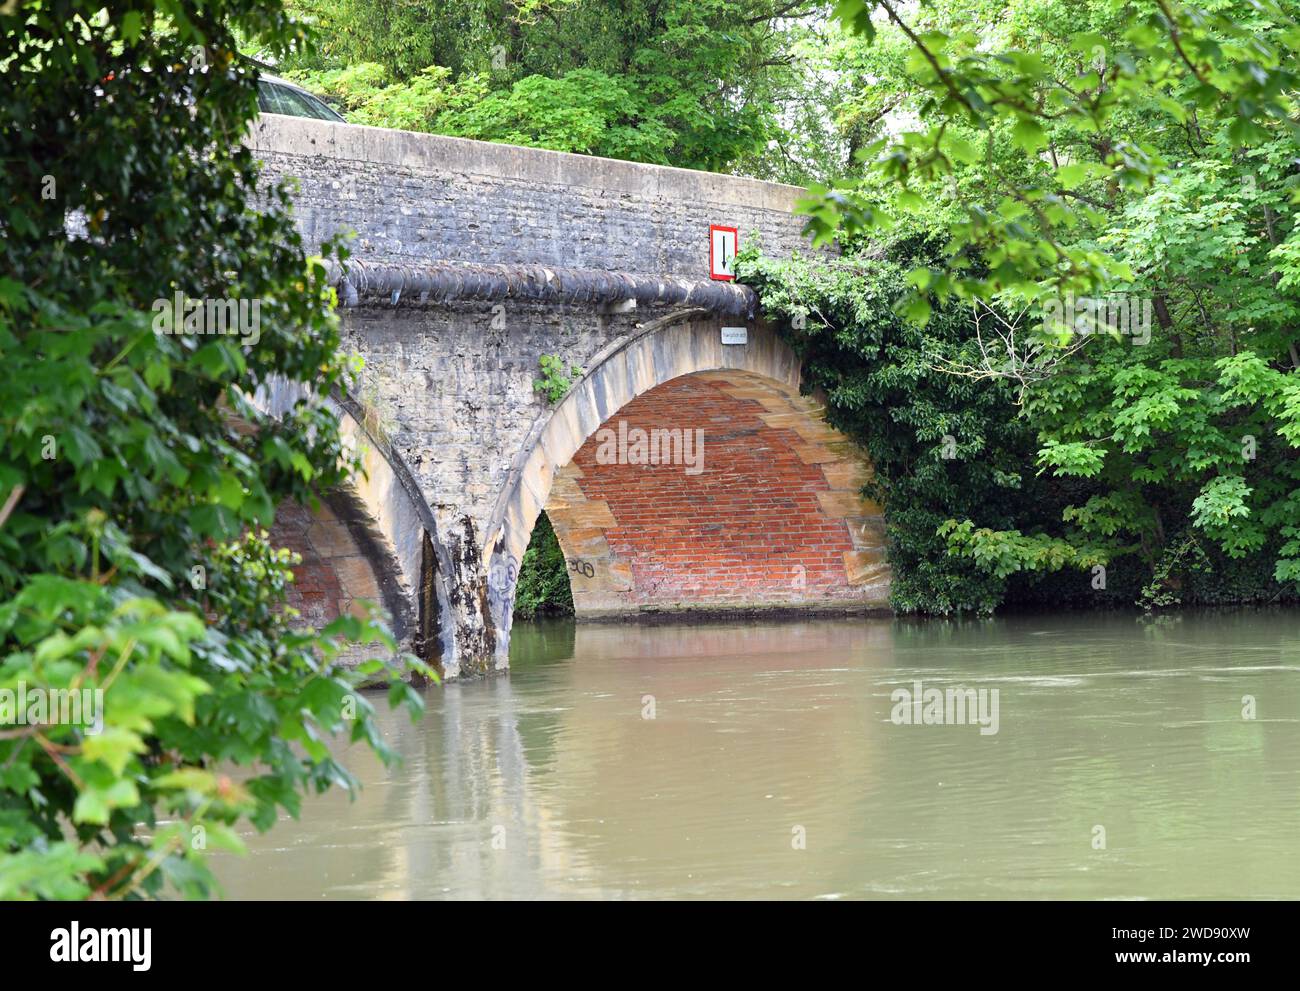 Pont en pierre à double arche traversant la Tamise, Angleterre Banque D'Images